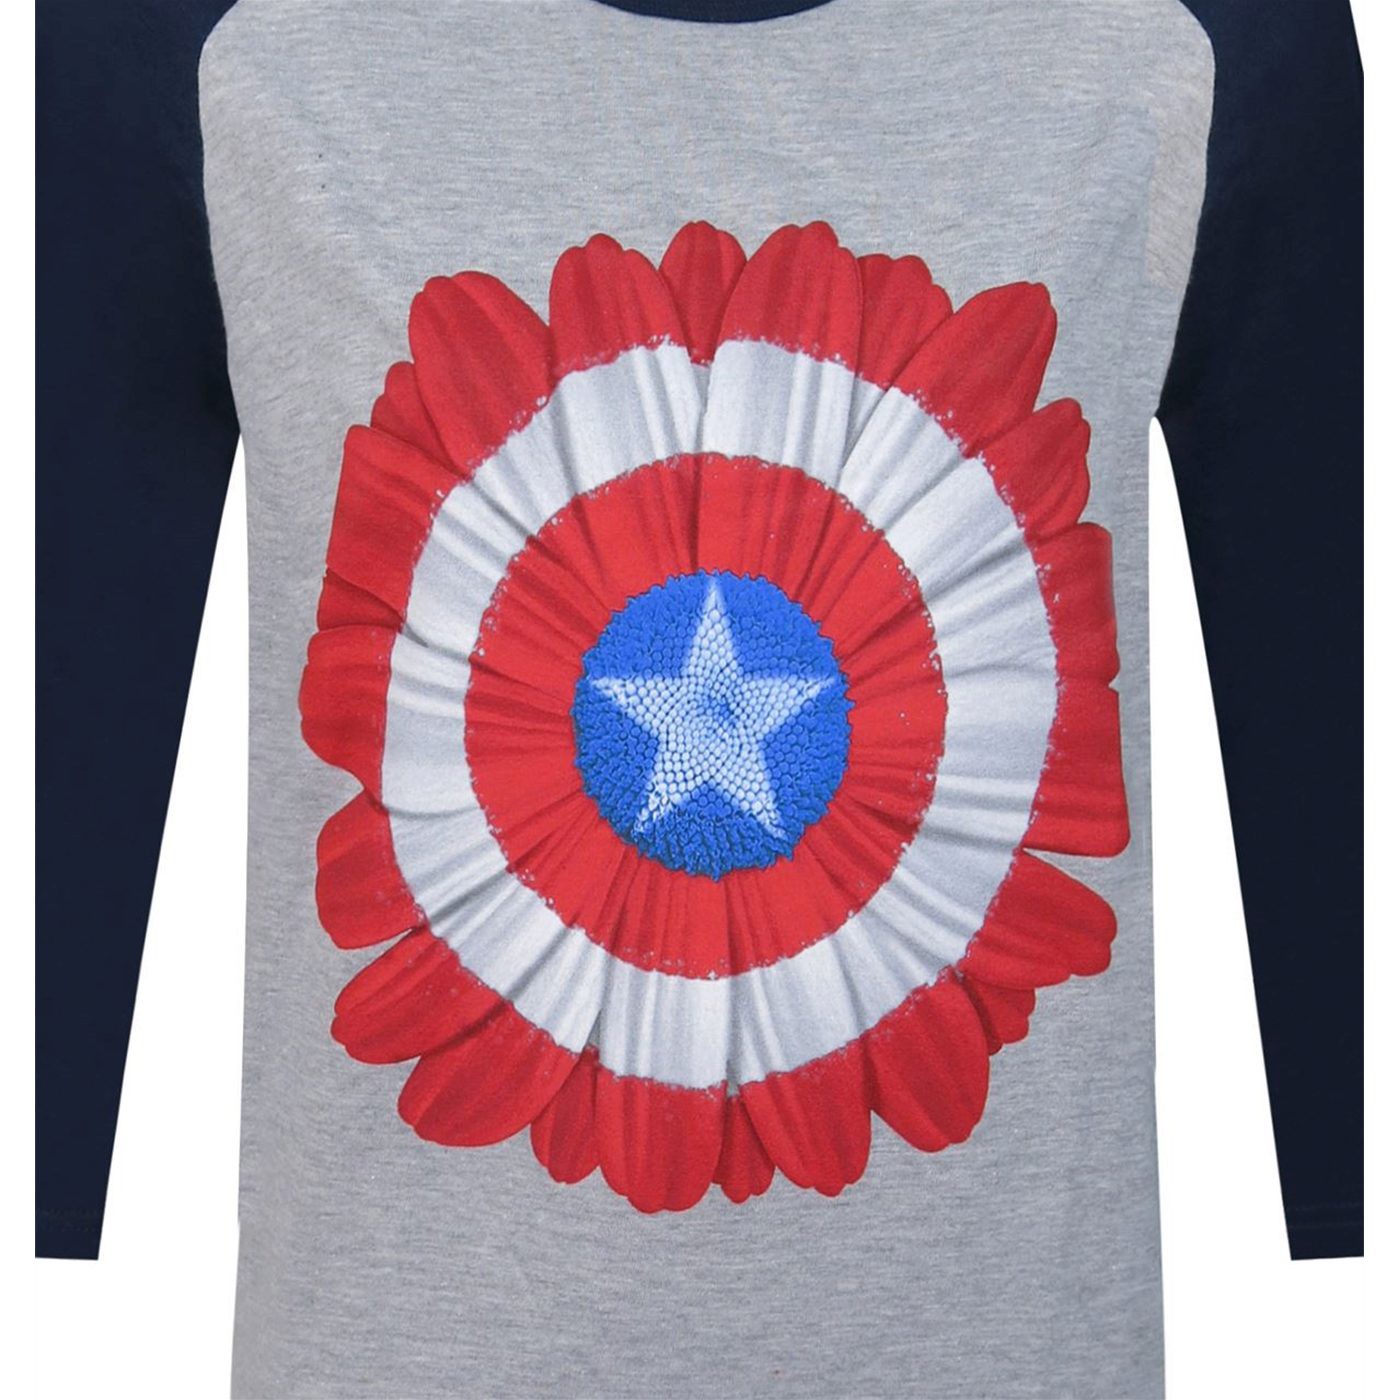 Captain America Flower Women's Baseball T-Shirt